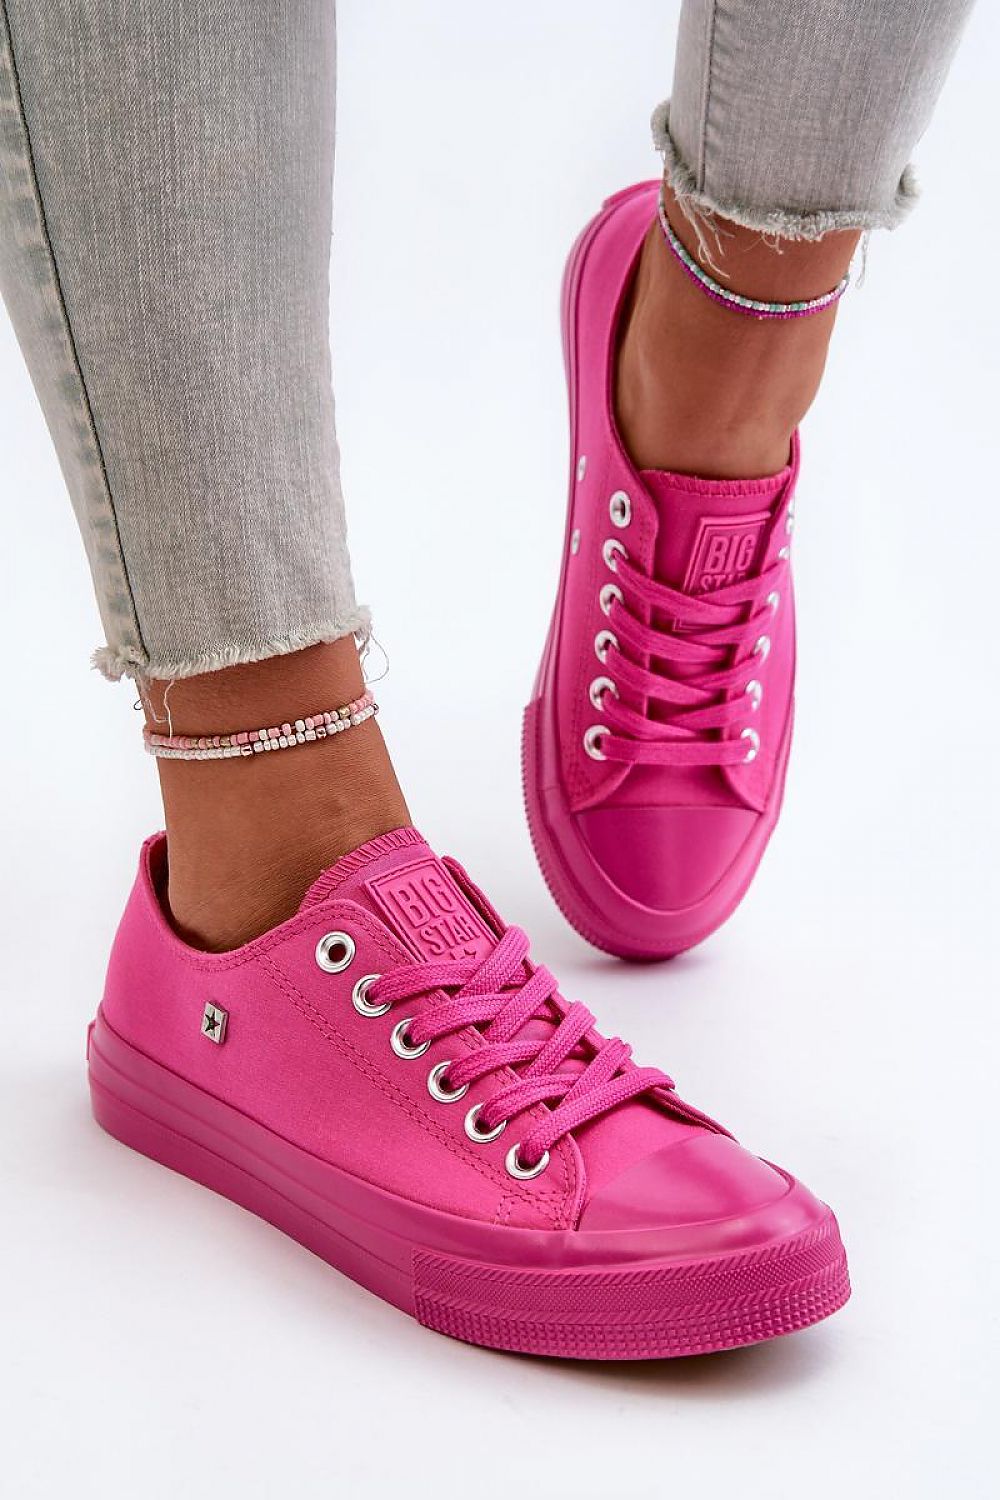 TEEK - Pink Lace BG Sneakers SHOES TEEK MH 6.5  